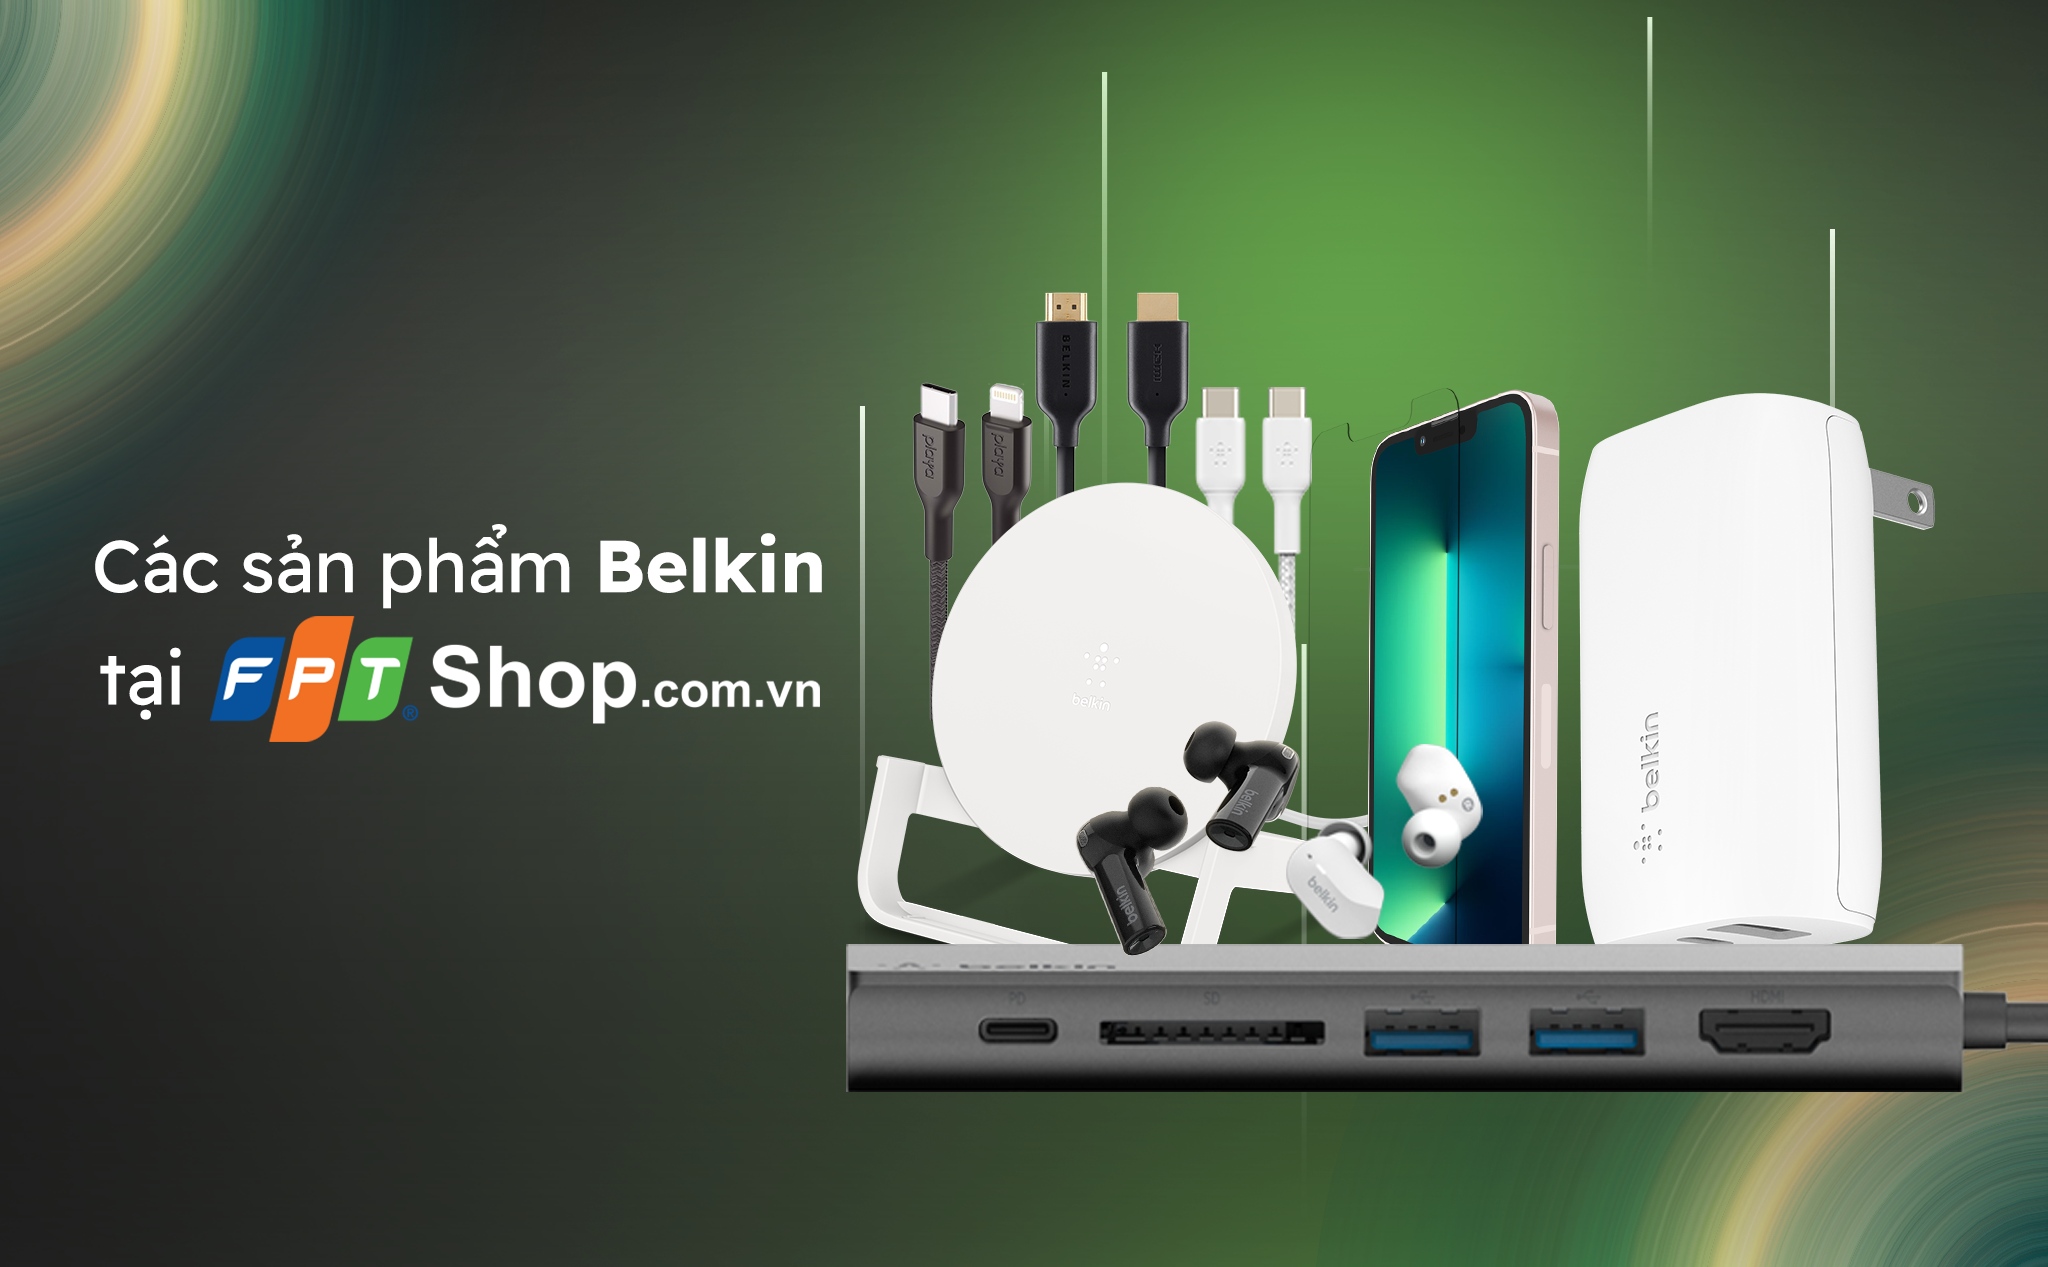 [QC] FPT Shop – Mở rộng dãy sản phẩm chất lượng cao cấp từ Belkin, chuyên biệt hơn dành cho Apple